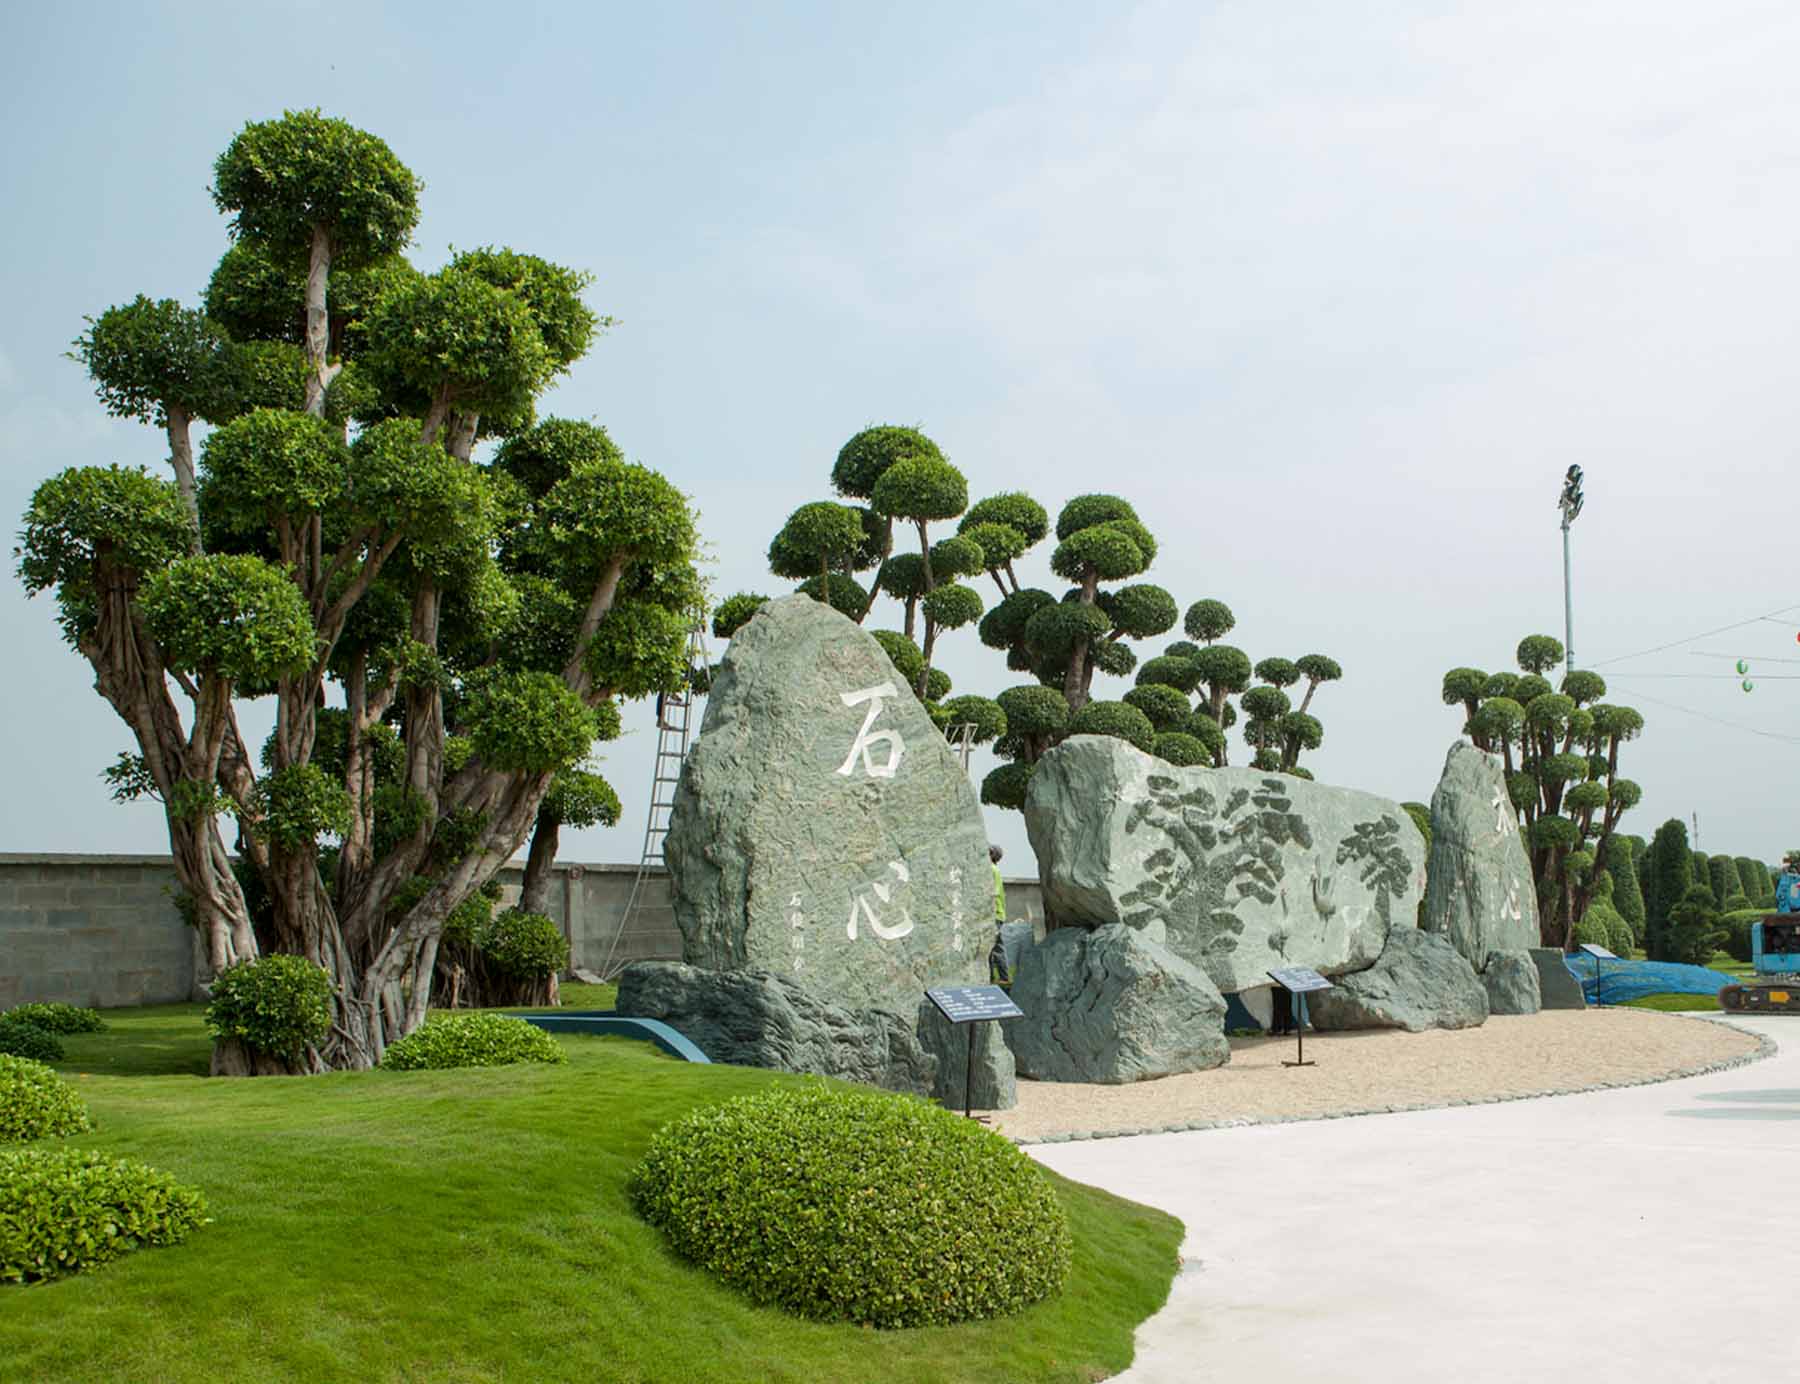 Tảng đá nặng 110 tấn được đặt ngay vị trí trung tâm của công viên mang ý nghĩa trường tồn, phát triển